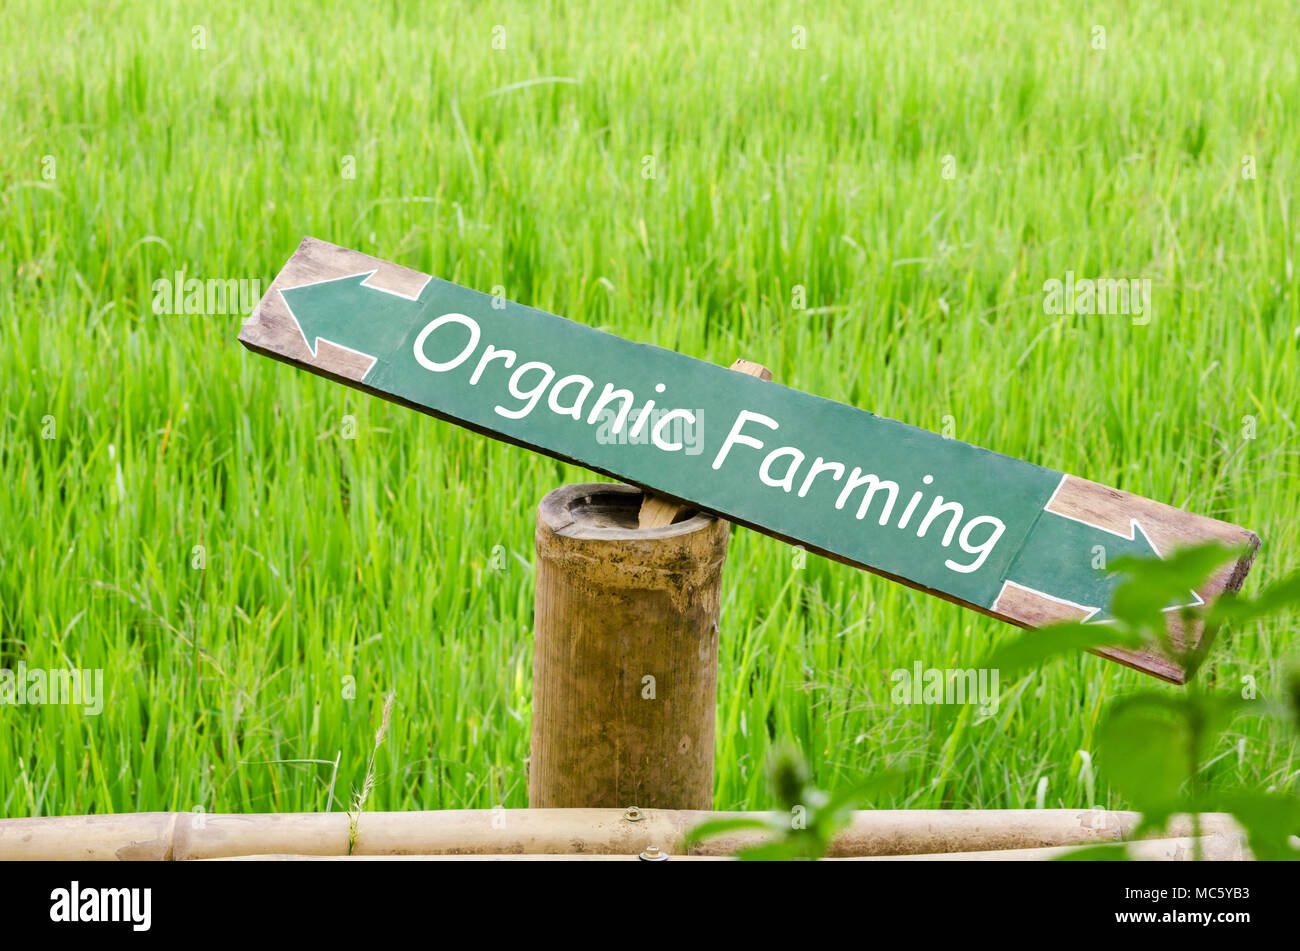 Der ökologische Landbau auf Holz Label in der Natur, Reisfeld blur Hintergrund. Stockfoto